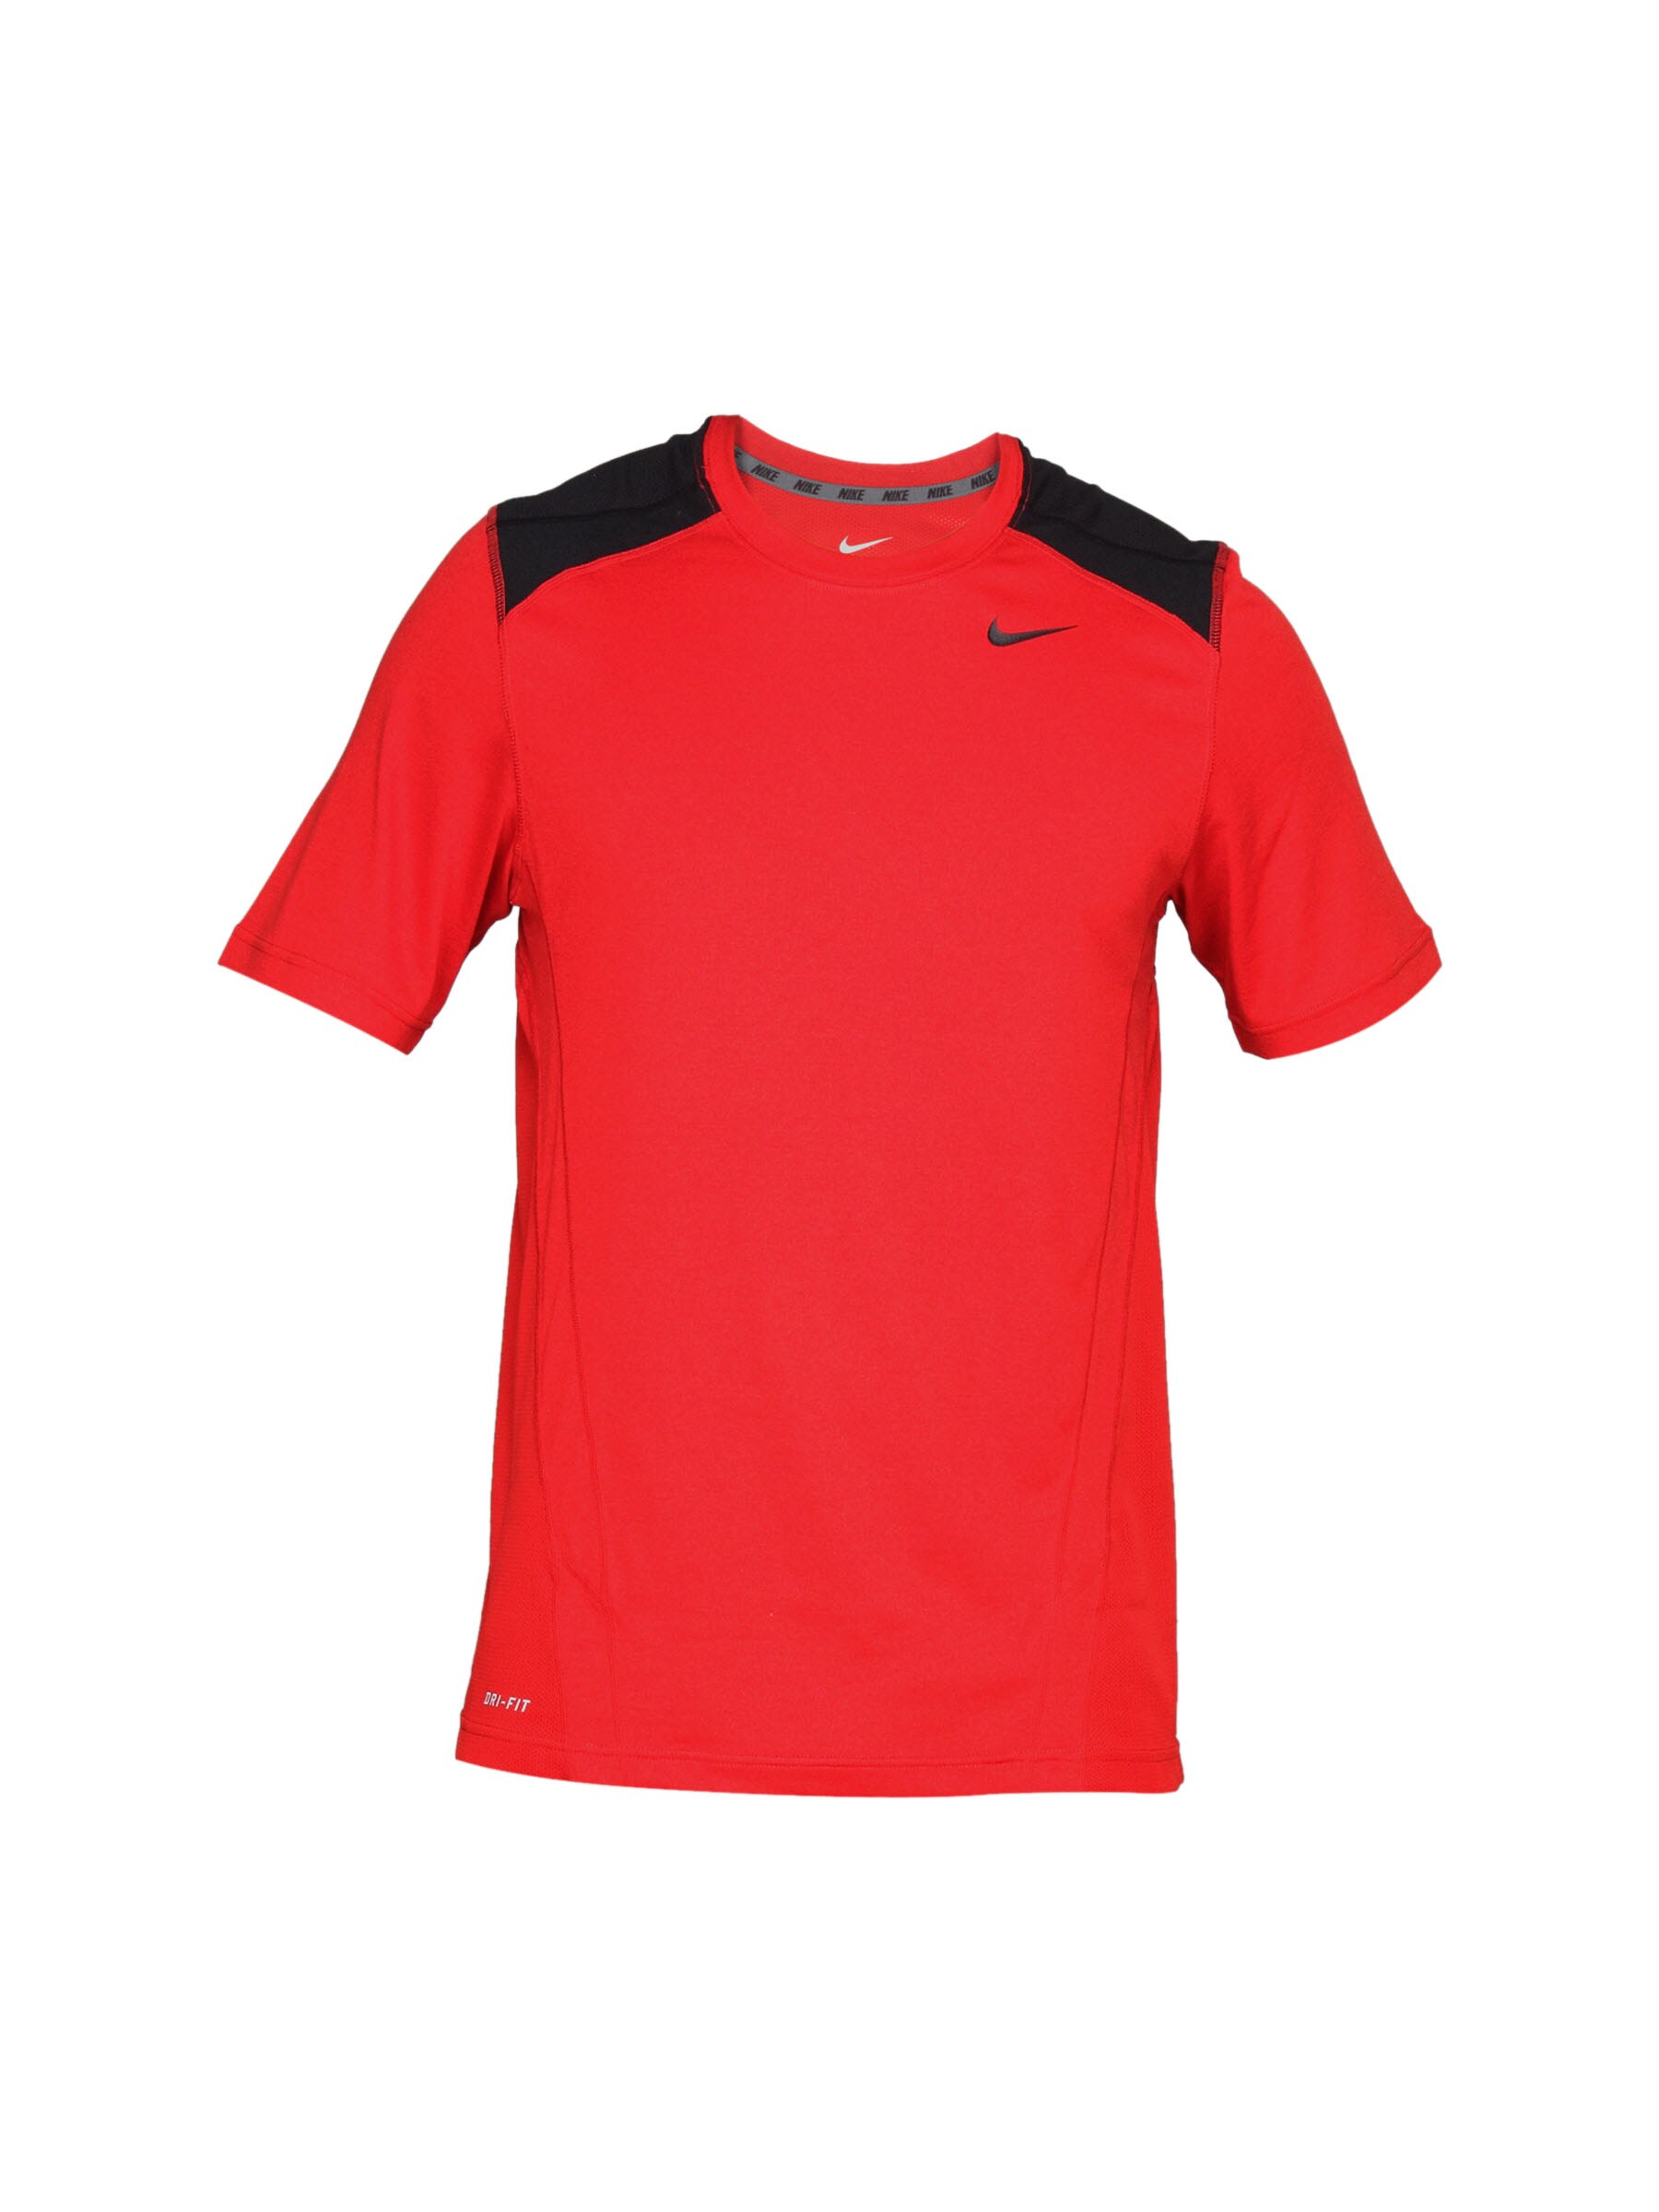 Nike Men's Speed Fury Red T-shirt